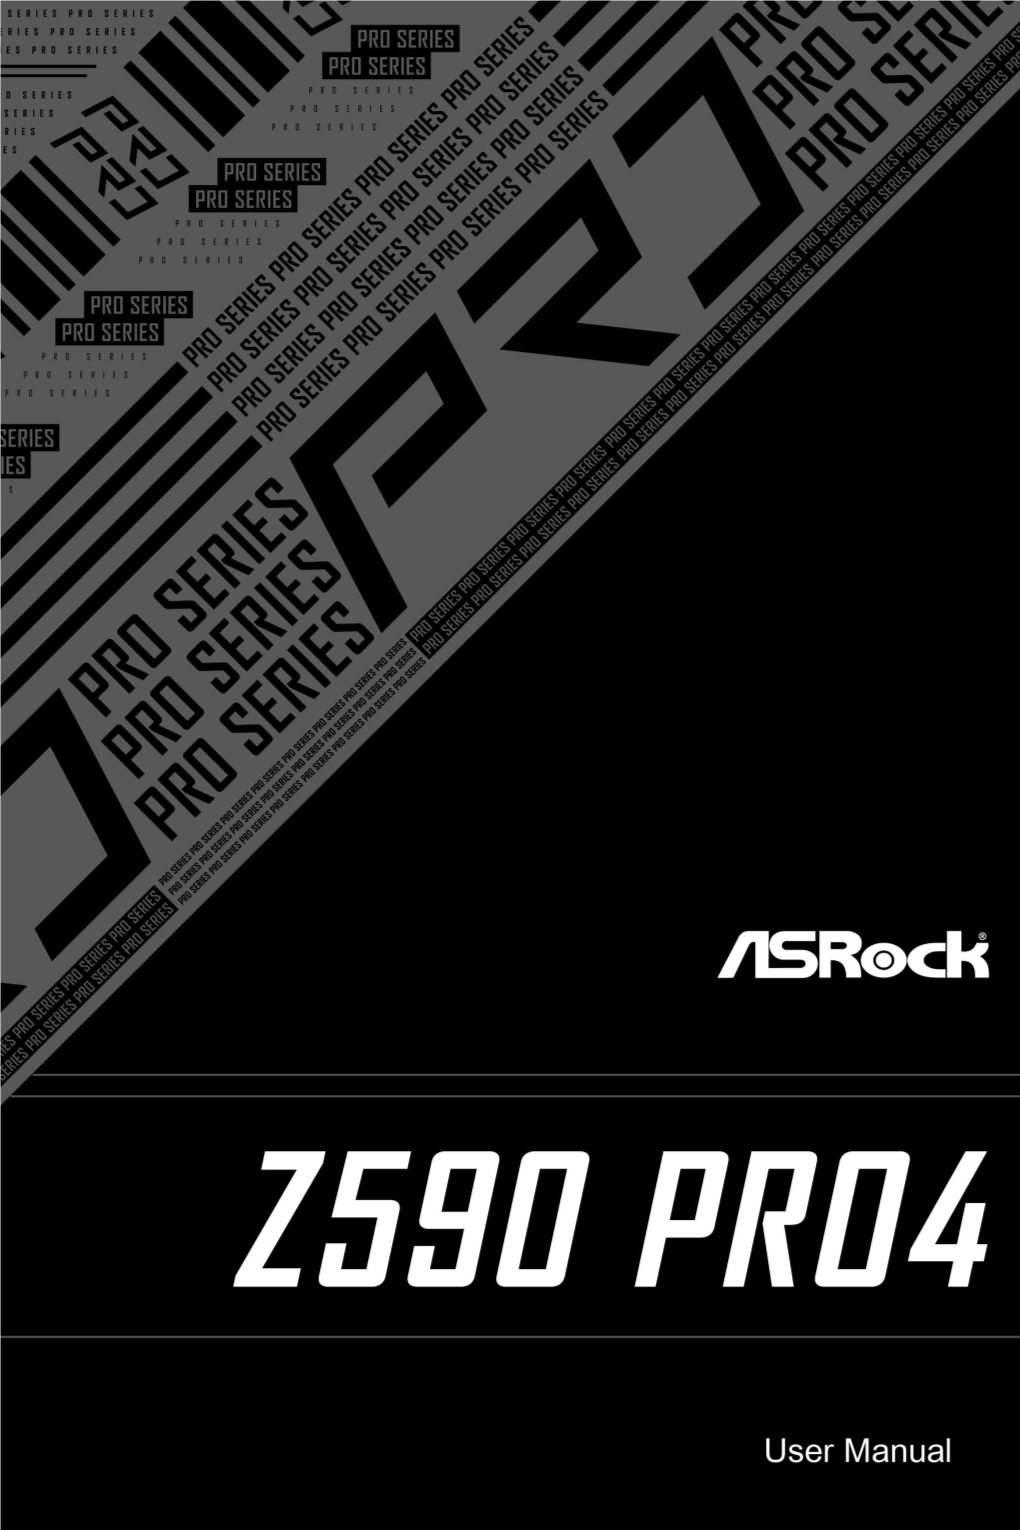 Z590 Pro4.Pdf